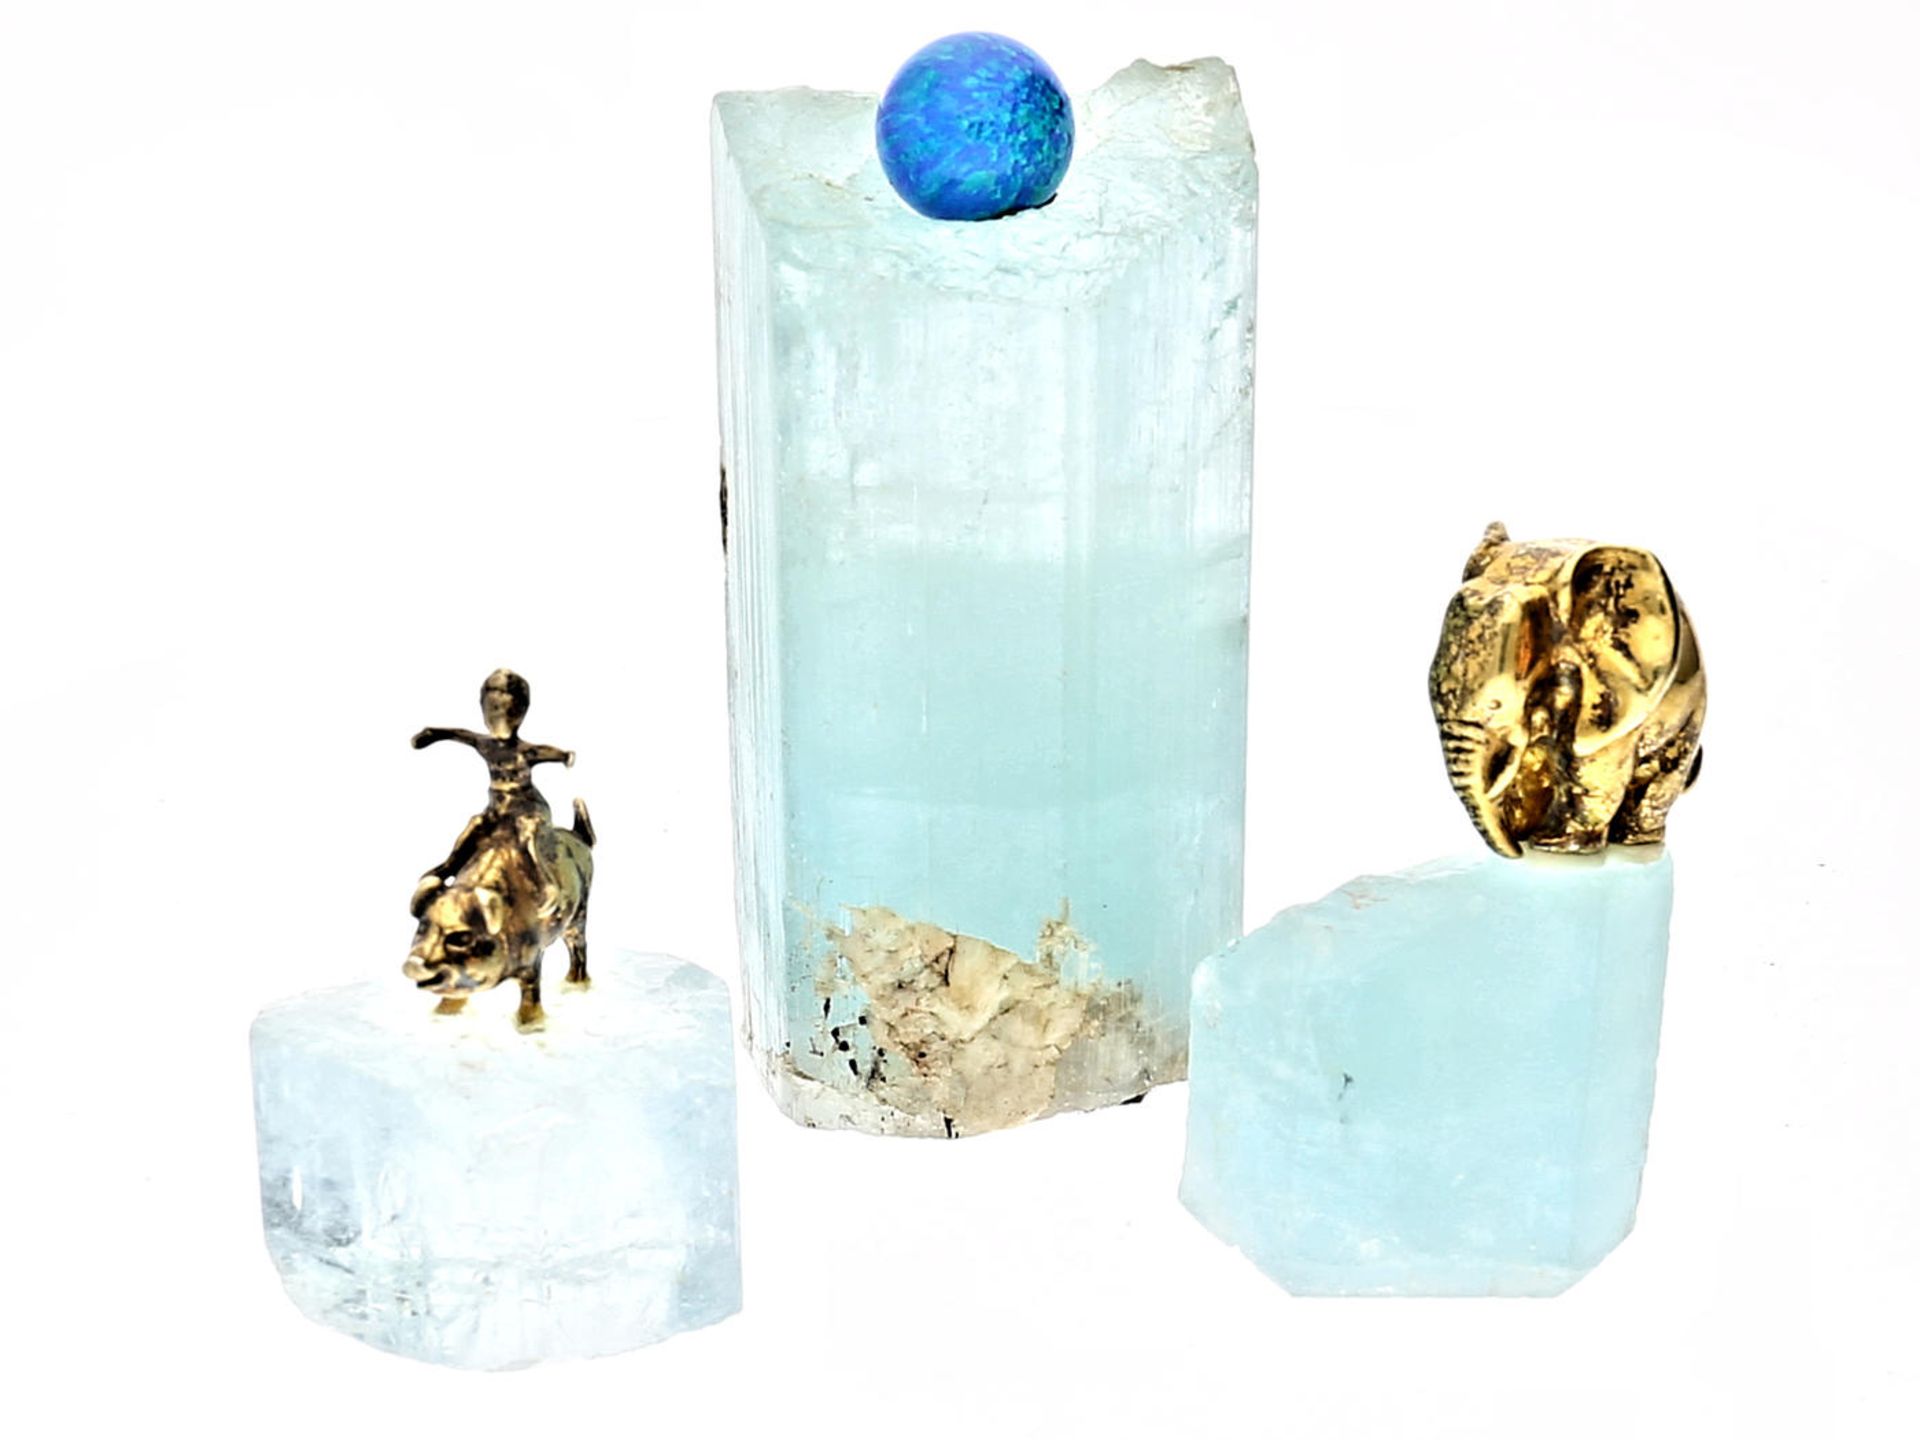 Steine: ungeschliffene Aquamarine, vintage Messeexponate einer Schmuckmesse, Restbestand einer